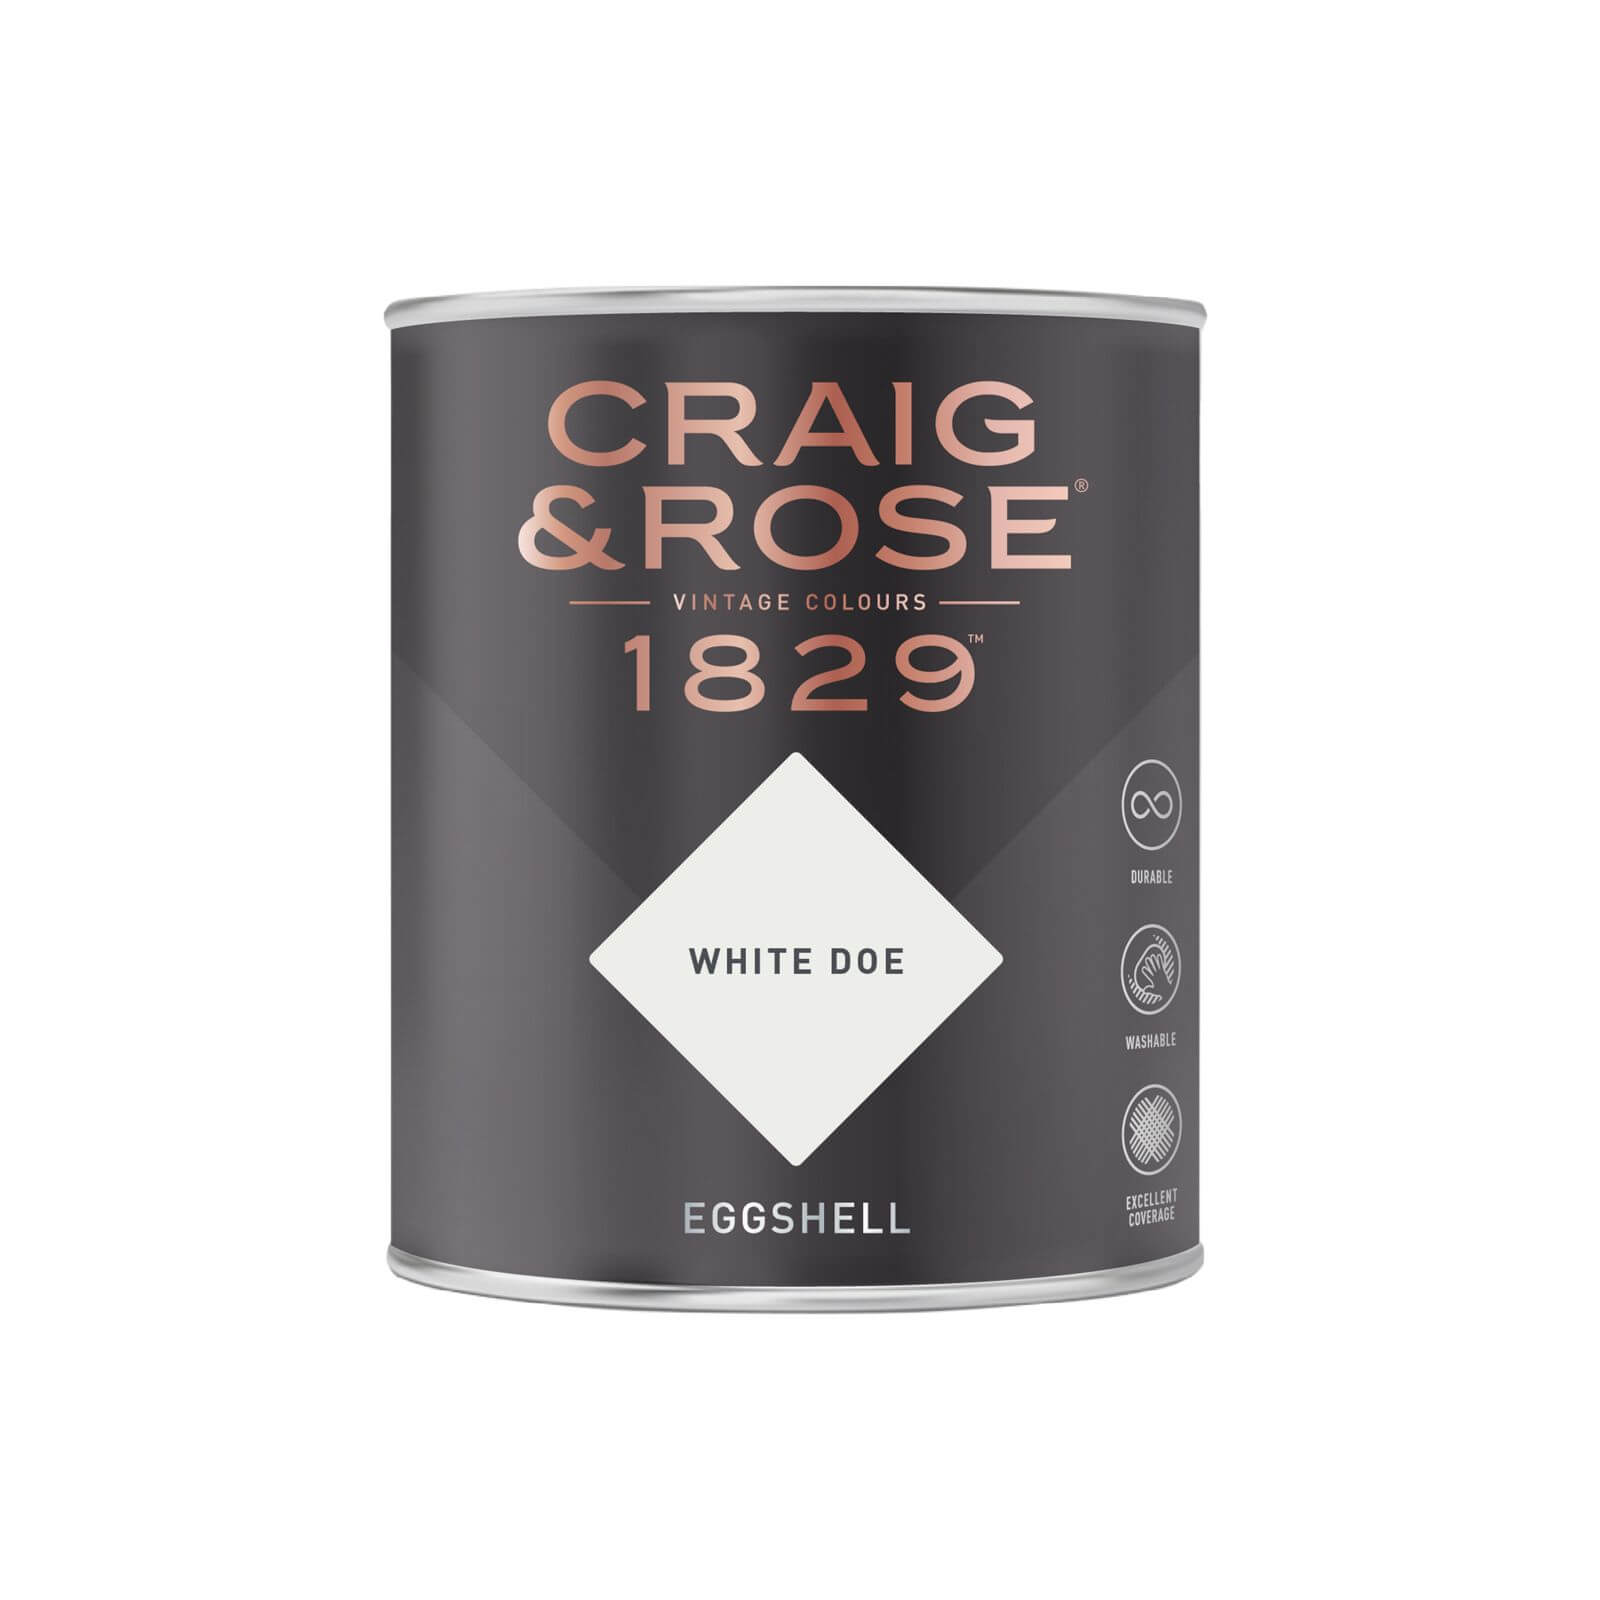 Craig & Rose 1829 Eggshell Paint White Doe - 750ml